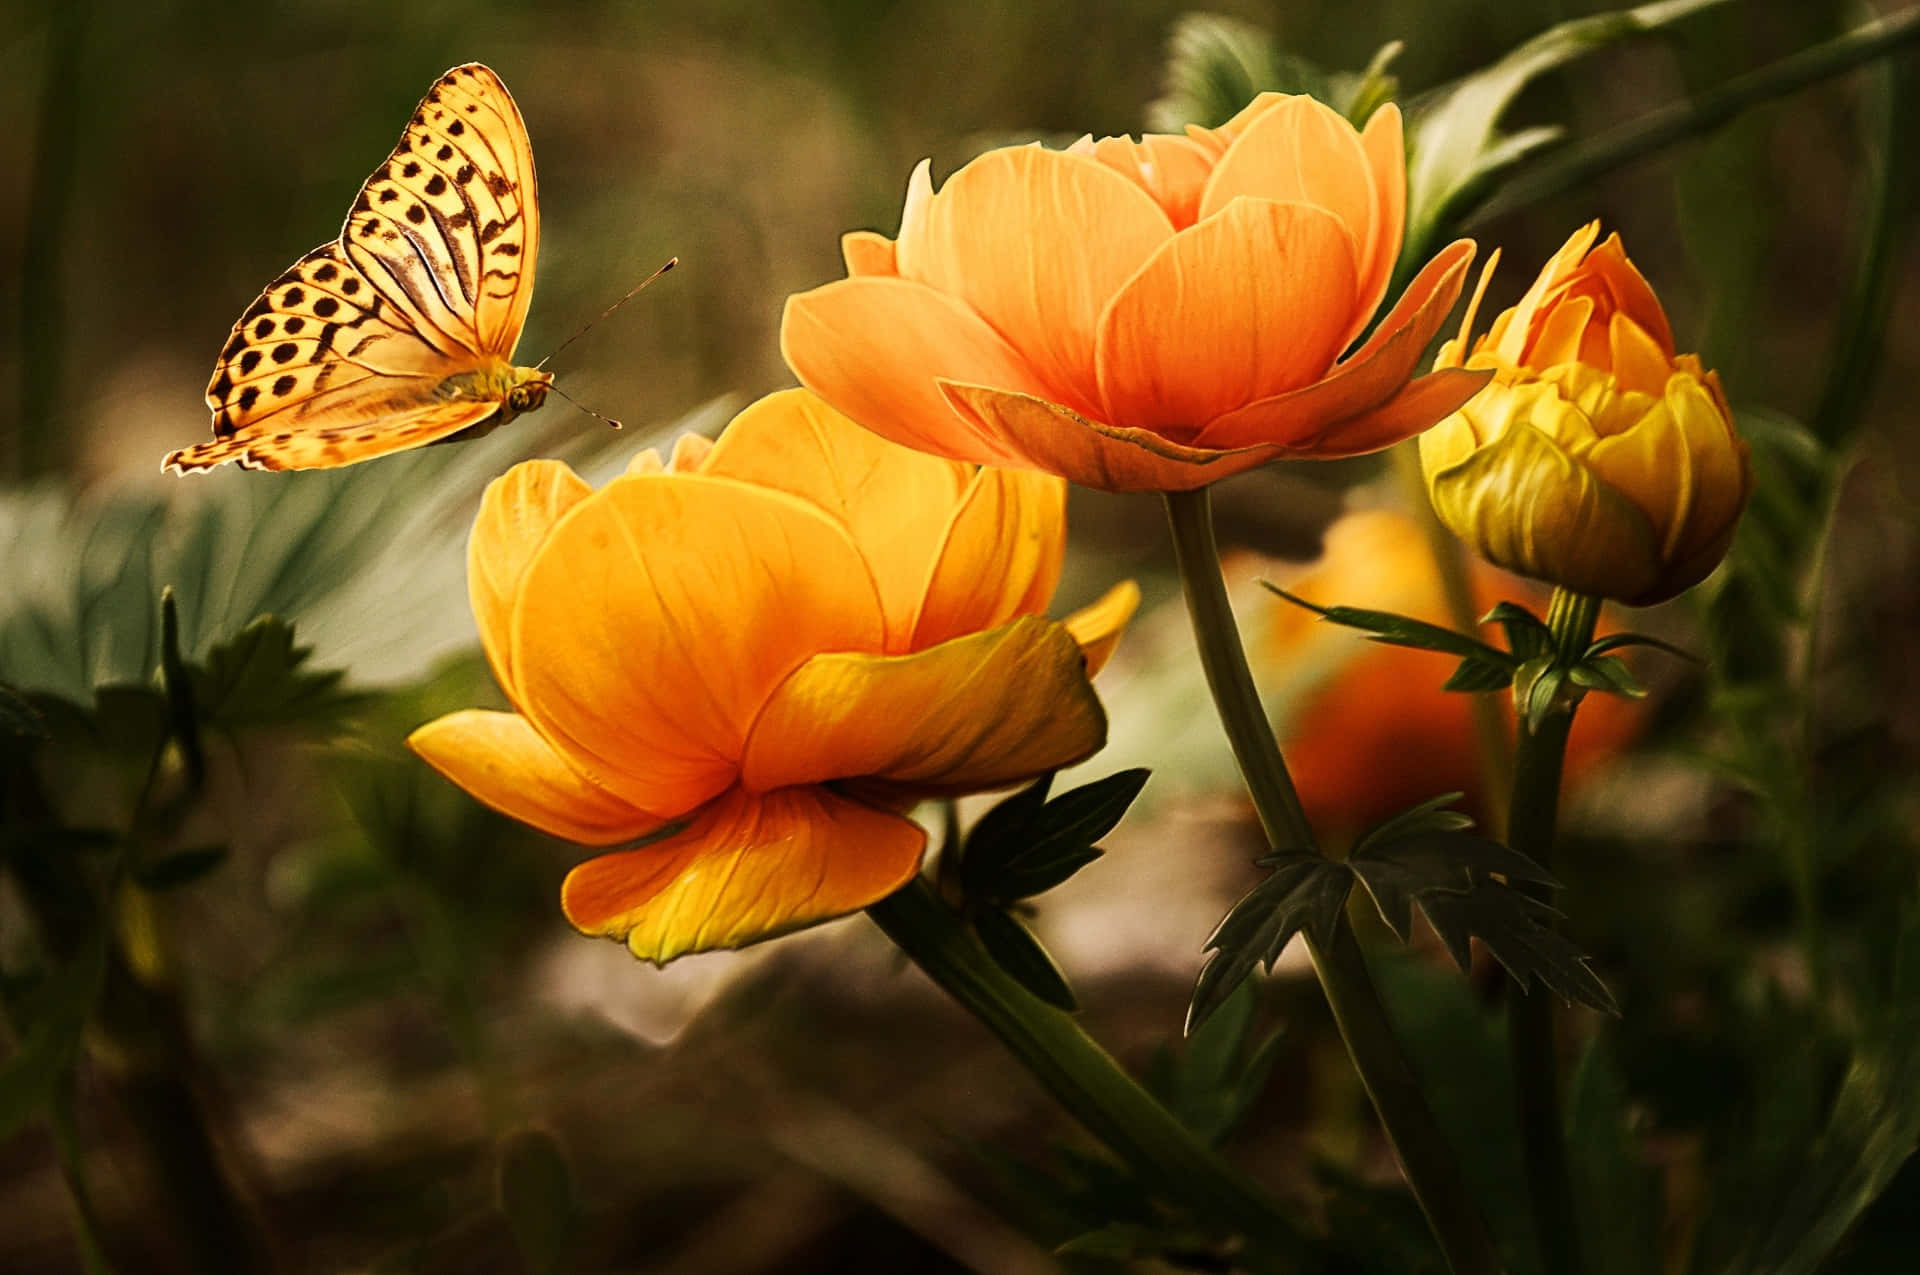 Imágenes De Flores Y Mariposas